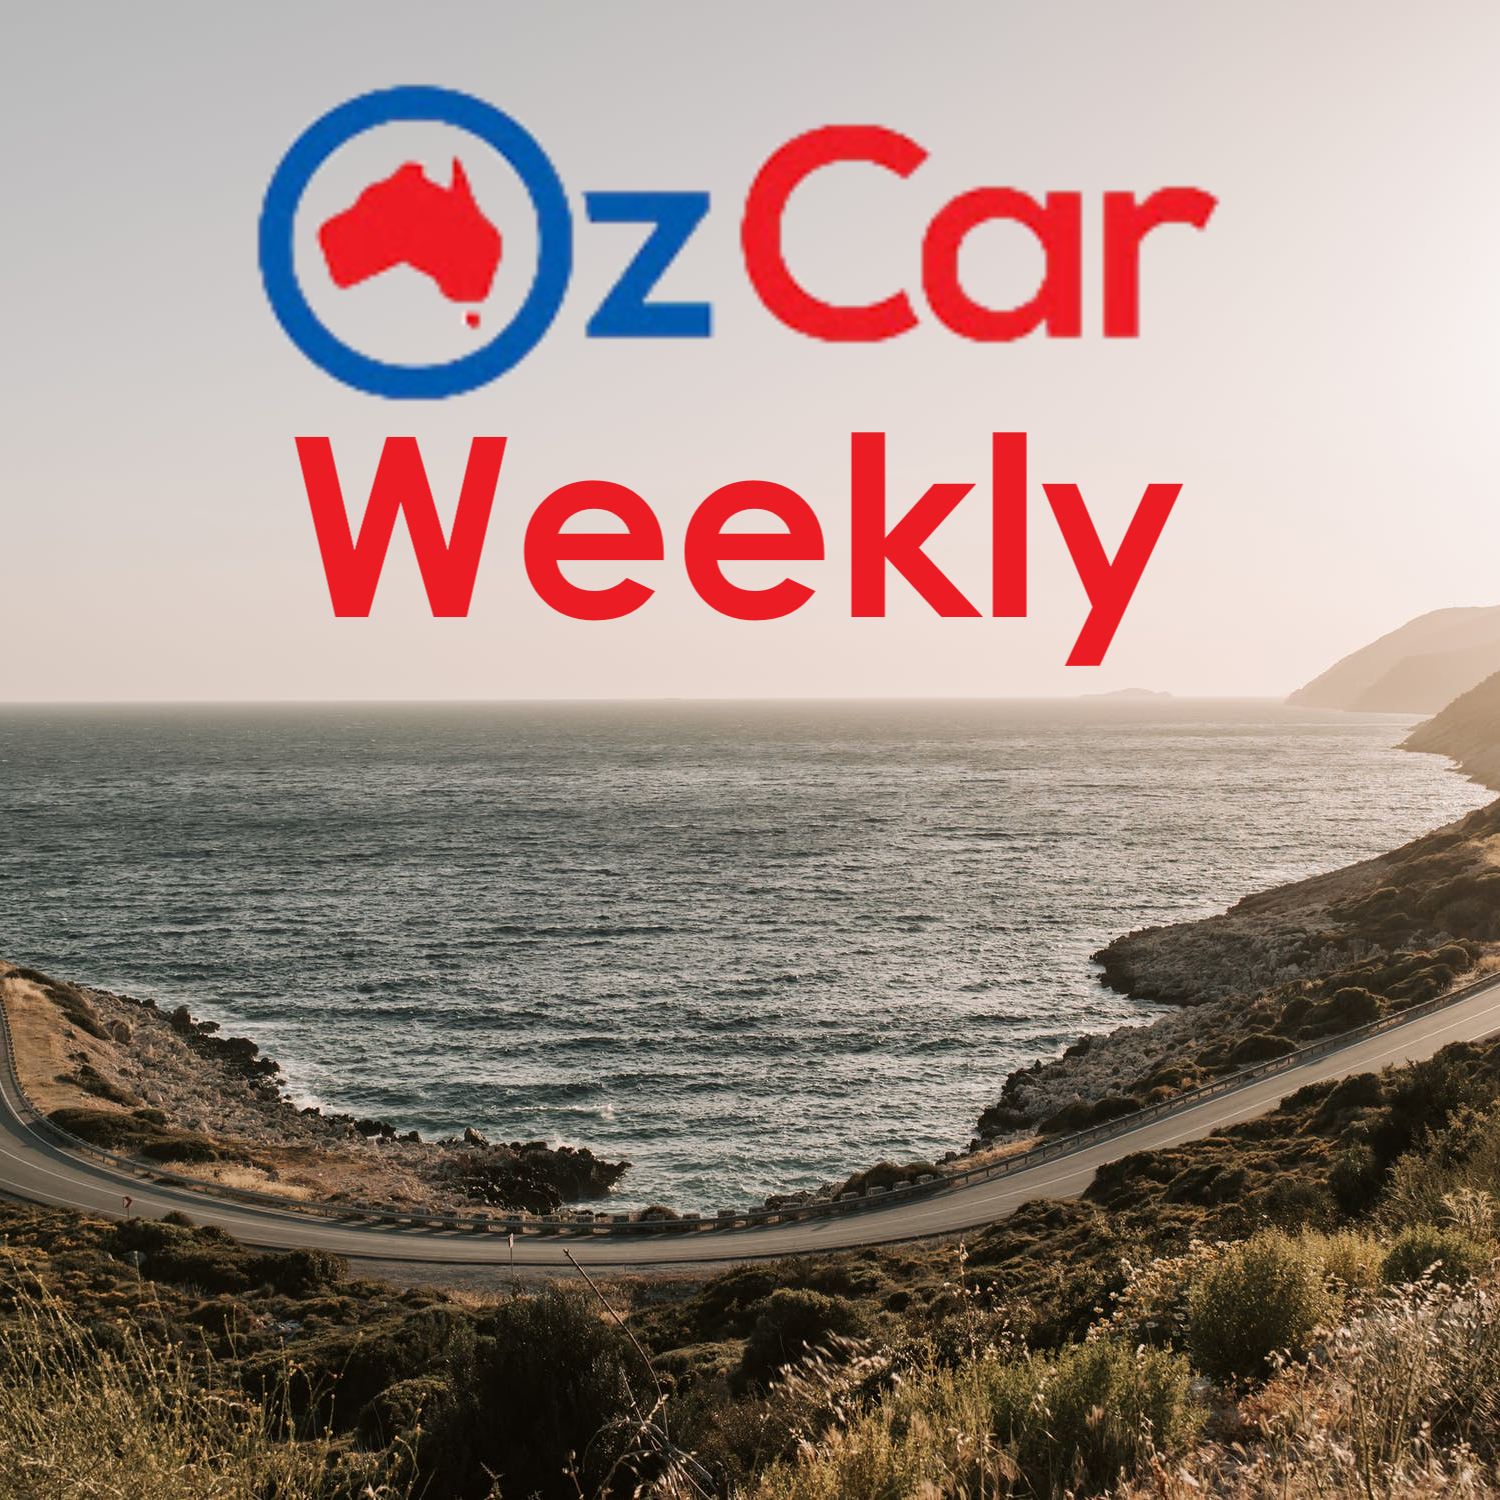 OzCar Weekly Episode 34